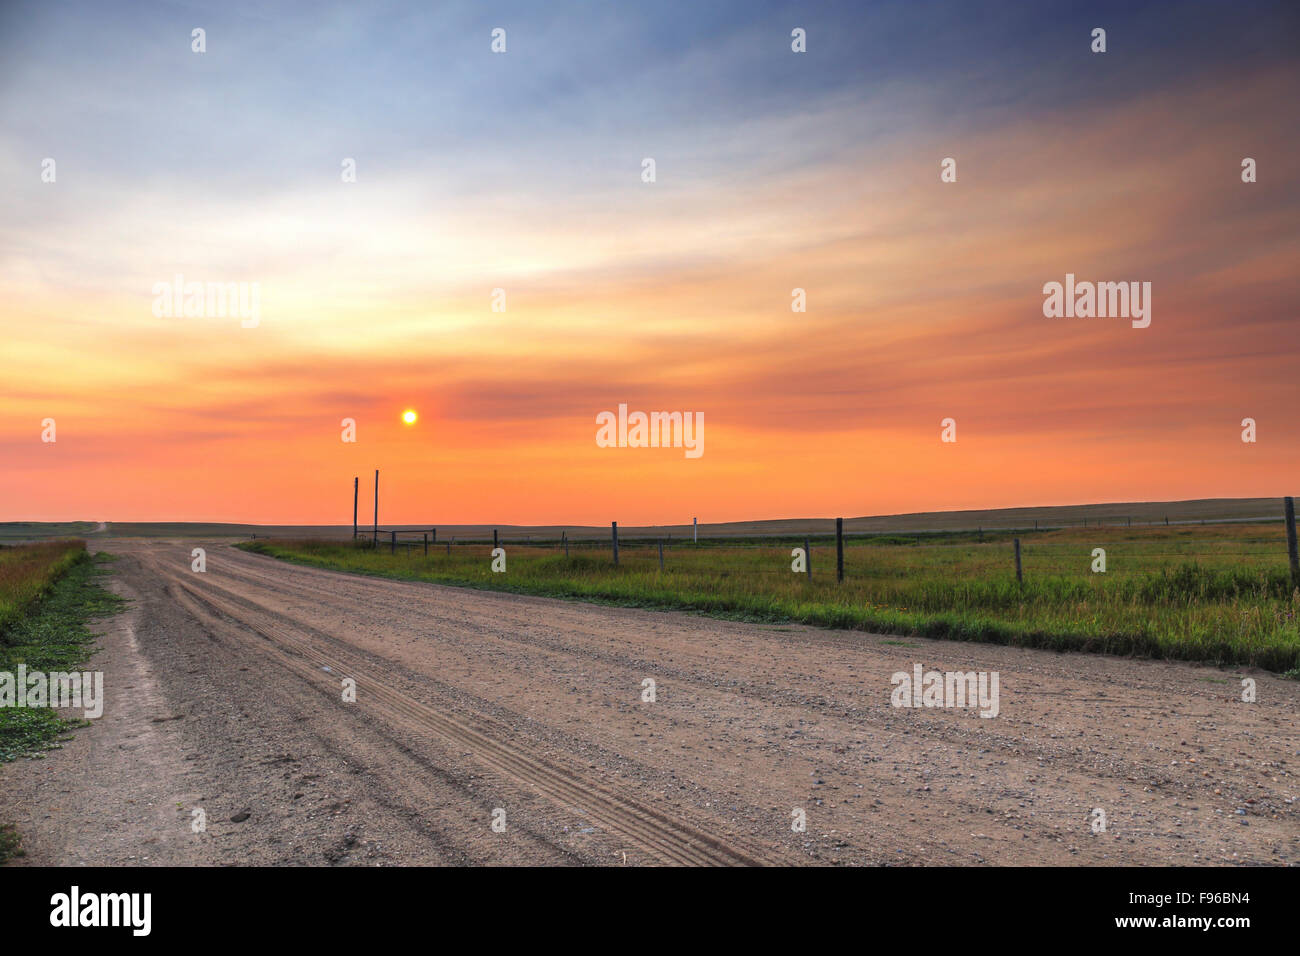 Sonnenuntergang, südlichen Saskatchewan, Prärie, Schotterstraße, eingezäunten Weide, Kanada, RM Bateman, Reifenspuren Stockfoto